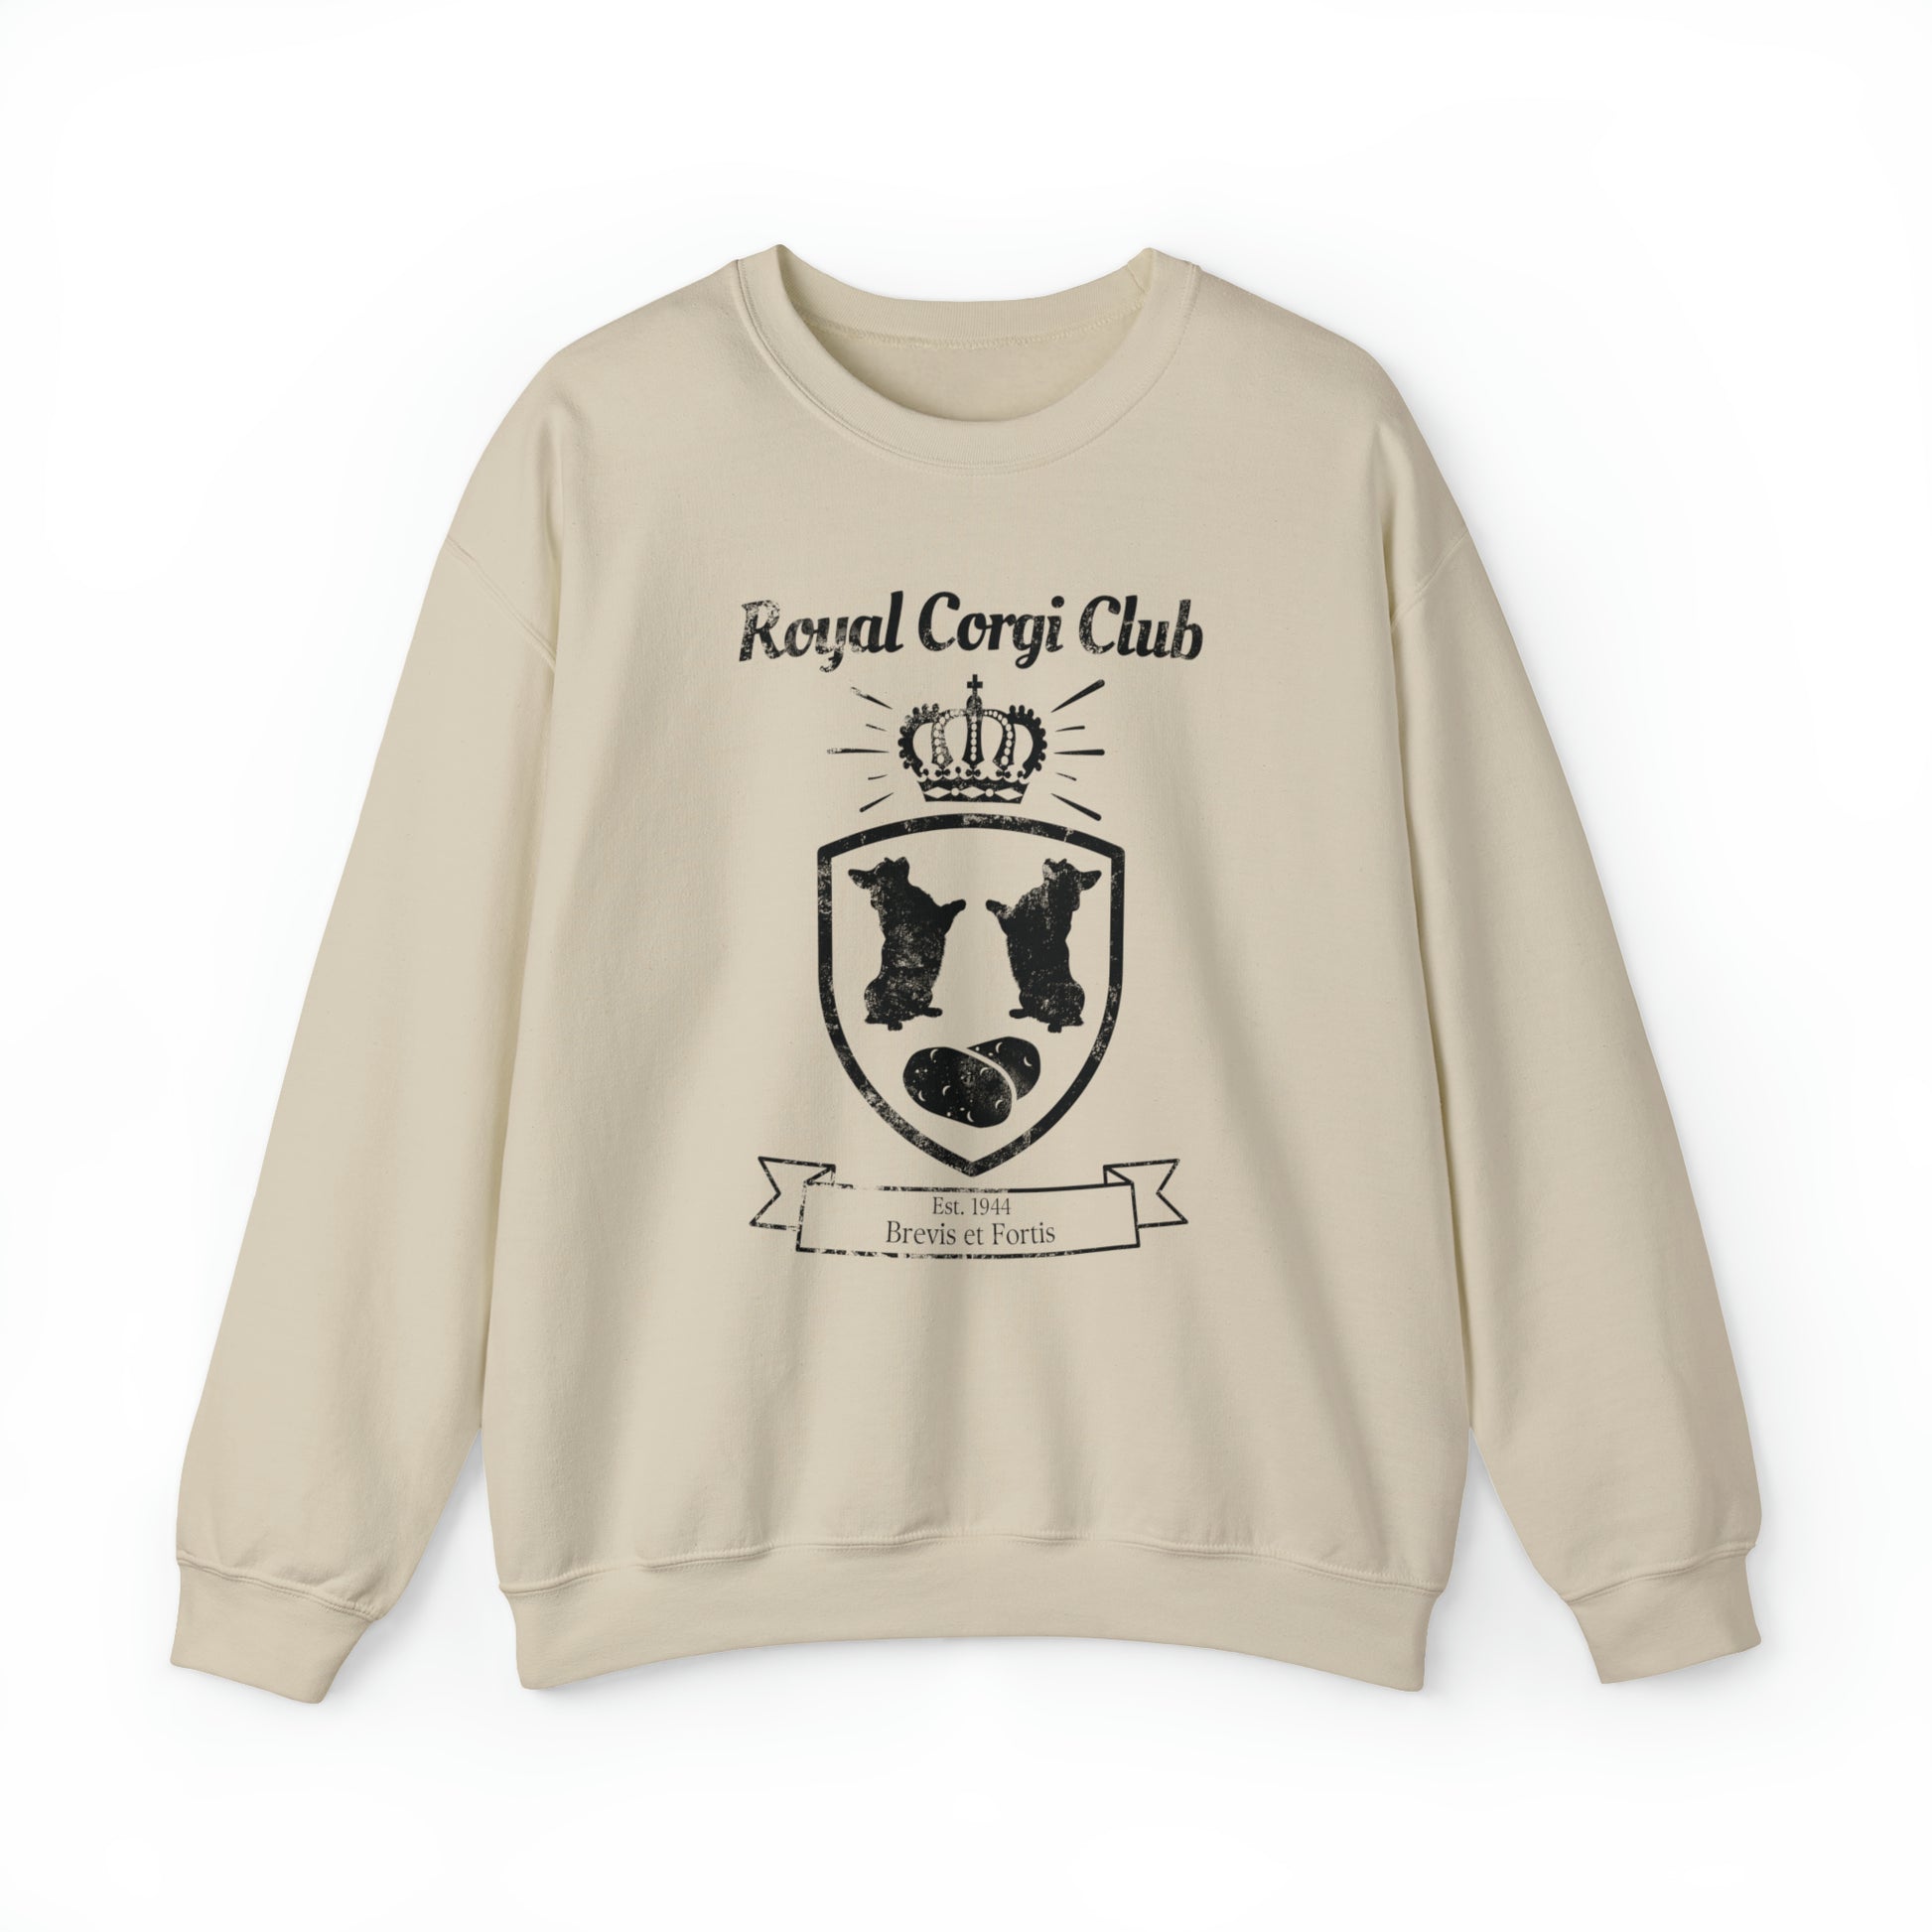 brown tan royal corgi club potato shield Pembroke Welsch sweatshirt women men unisex sweater